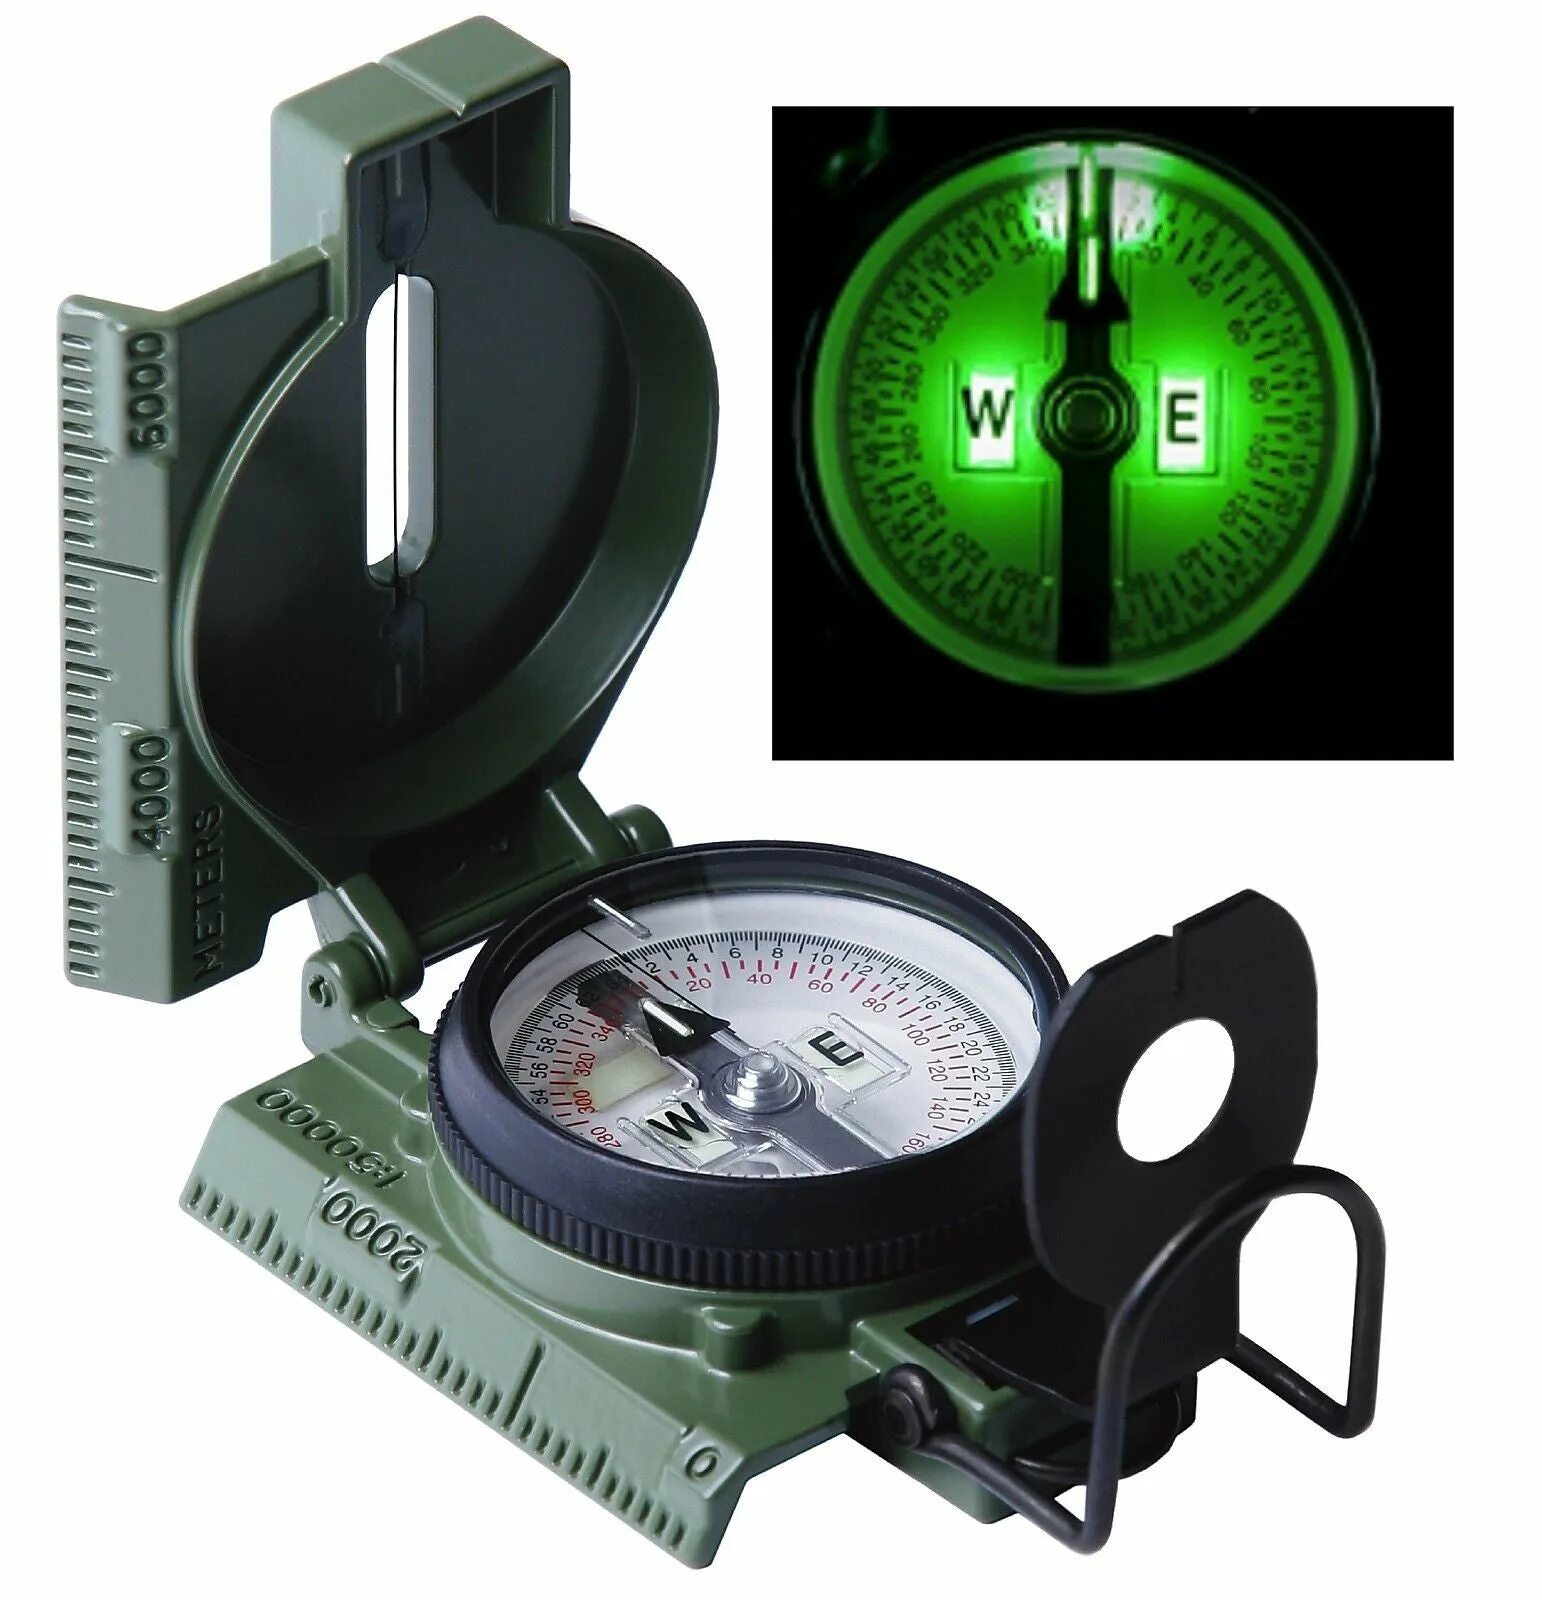 W e компас. Компас Lensatic Compass. Cammenga 3h g.i. Military Lensatic Compass.. Компас Cammenga. Компас Cammenga 3h.